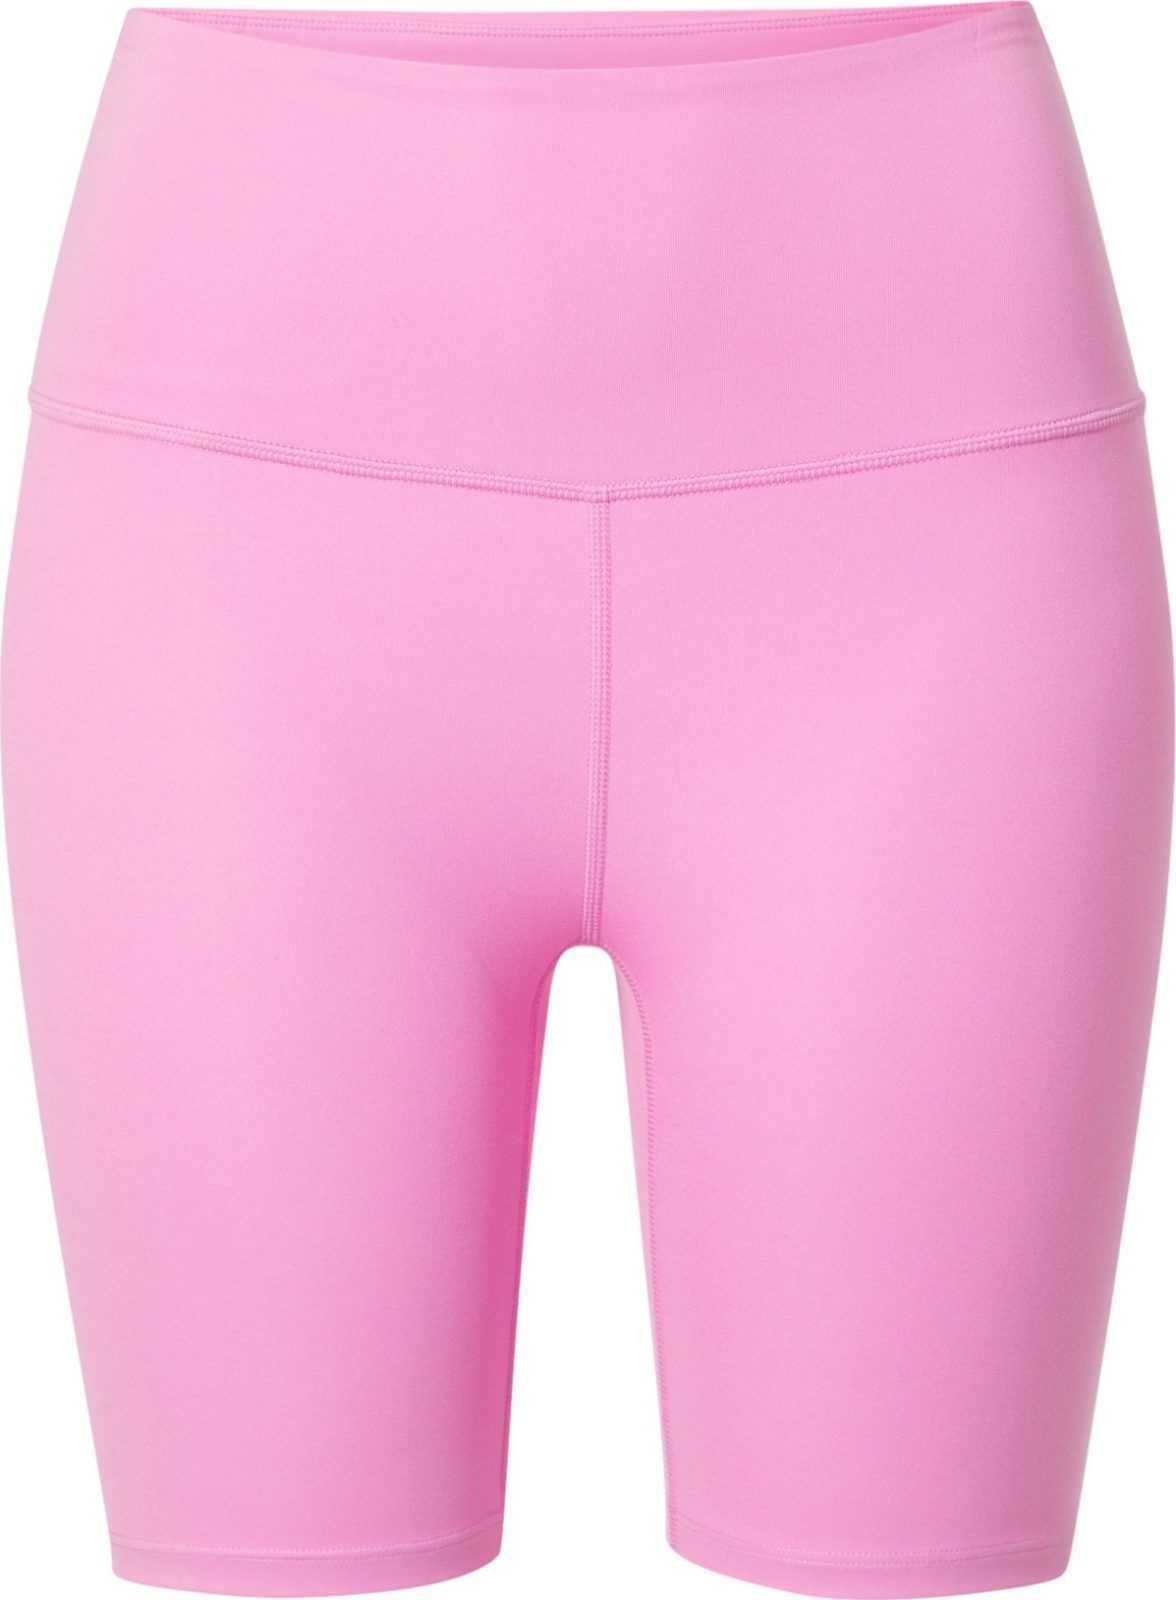 Varley Sportovní kalhoty 'Let's move' světle růžová